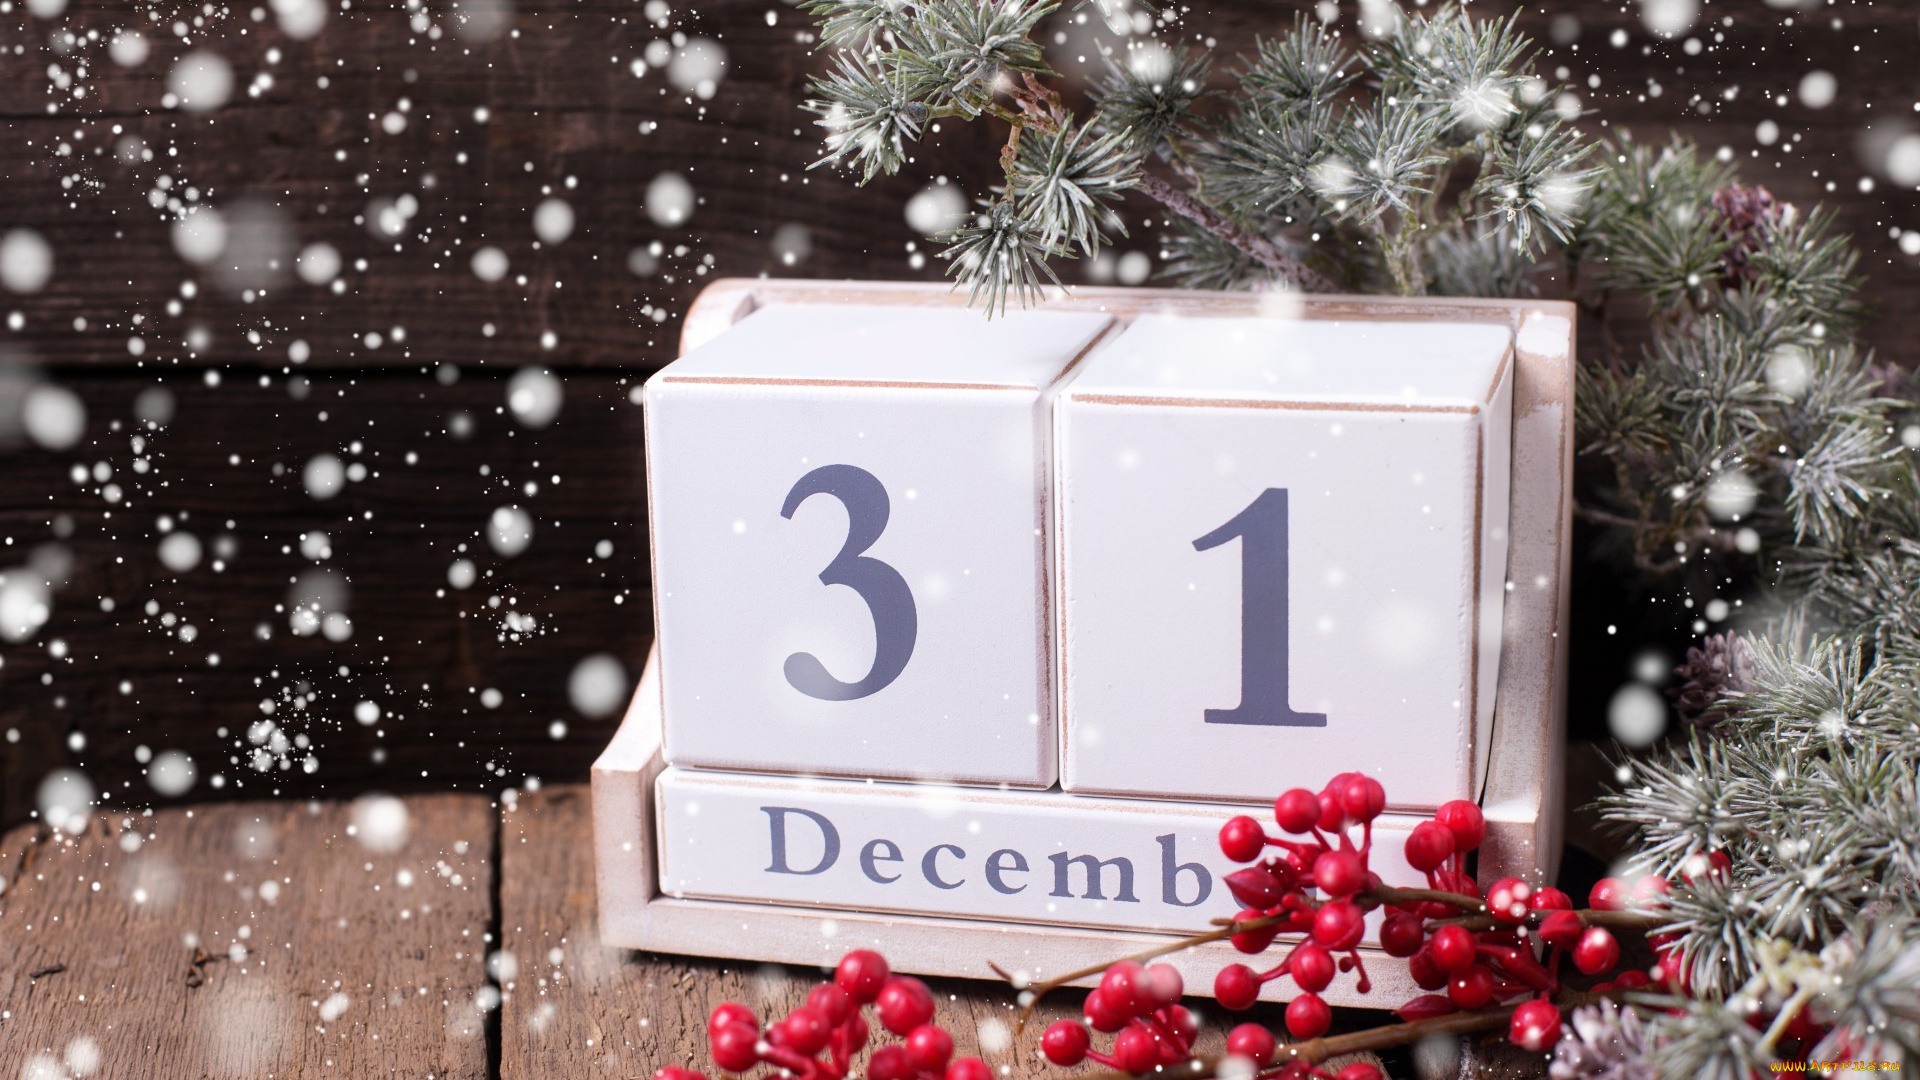 праздничные, -, разное, , новый, год, снег, рождество, new, year, christmas, wood, елка, decoration, merry, holiday, celebration, happy, украшения, xmas, новый, год, snow